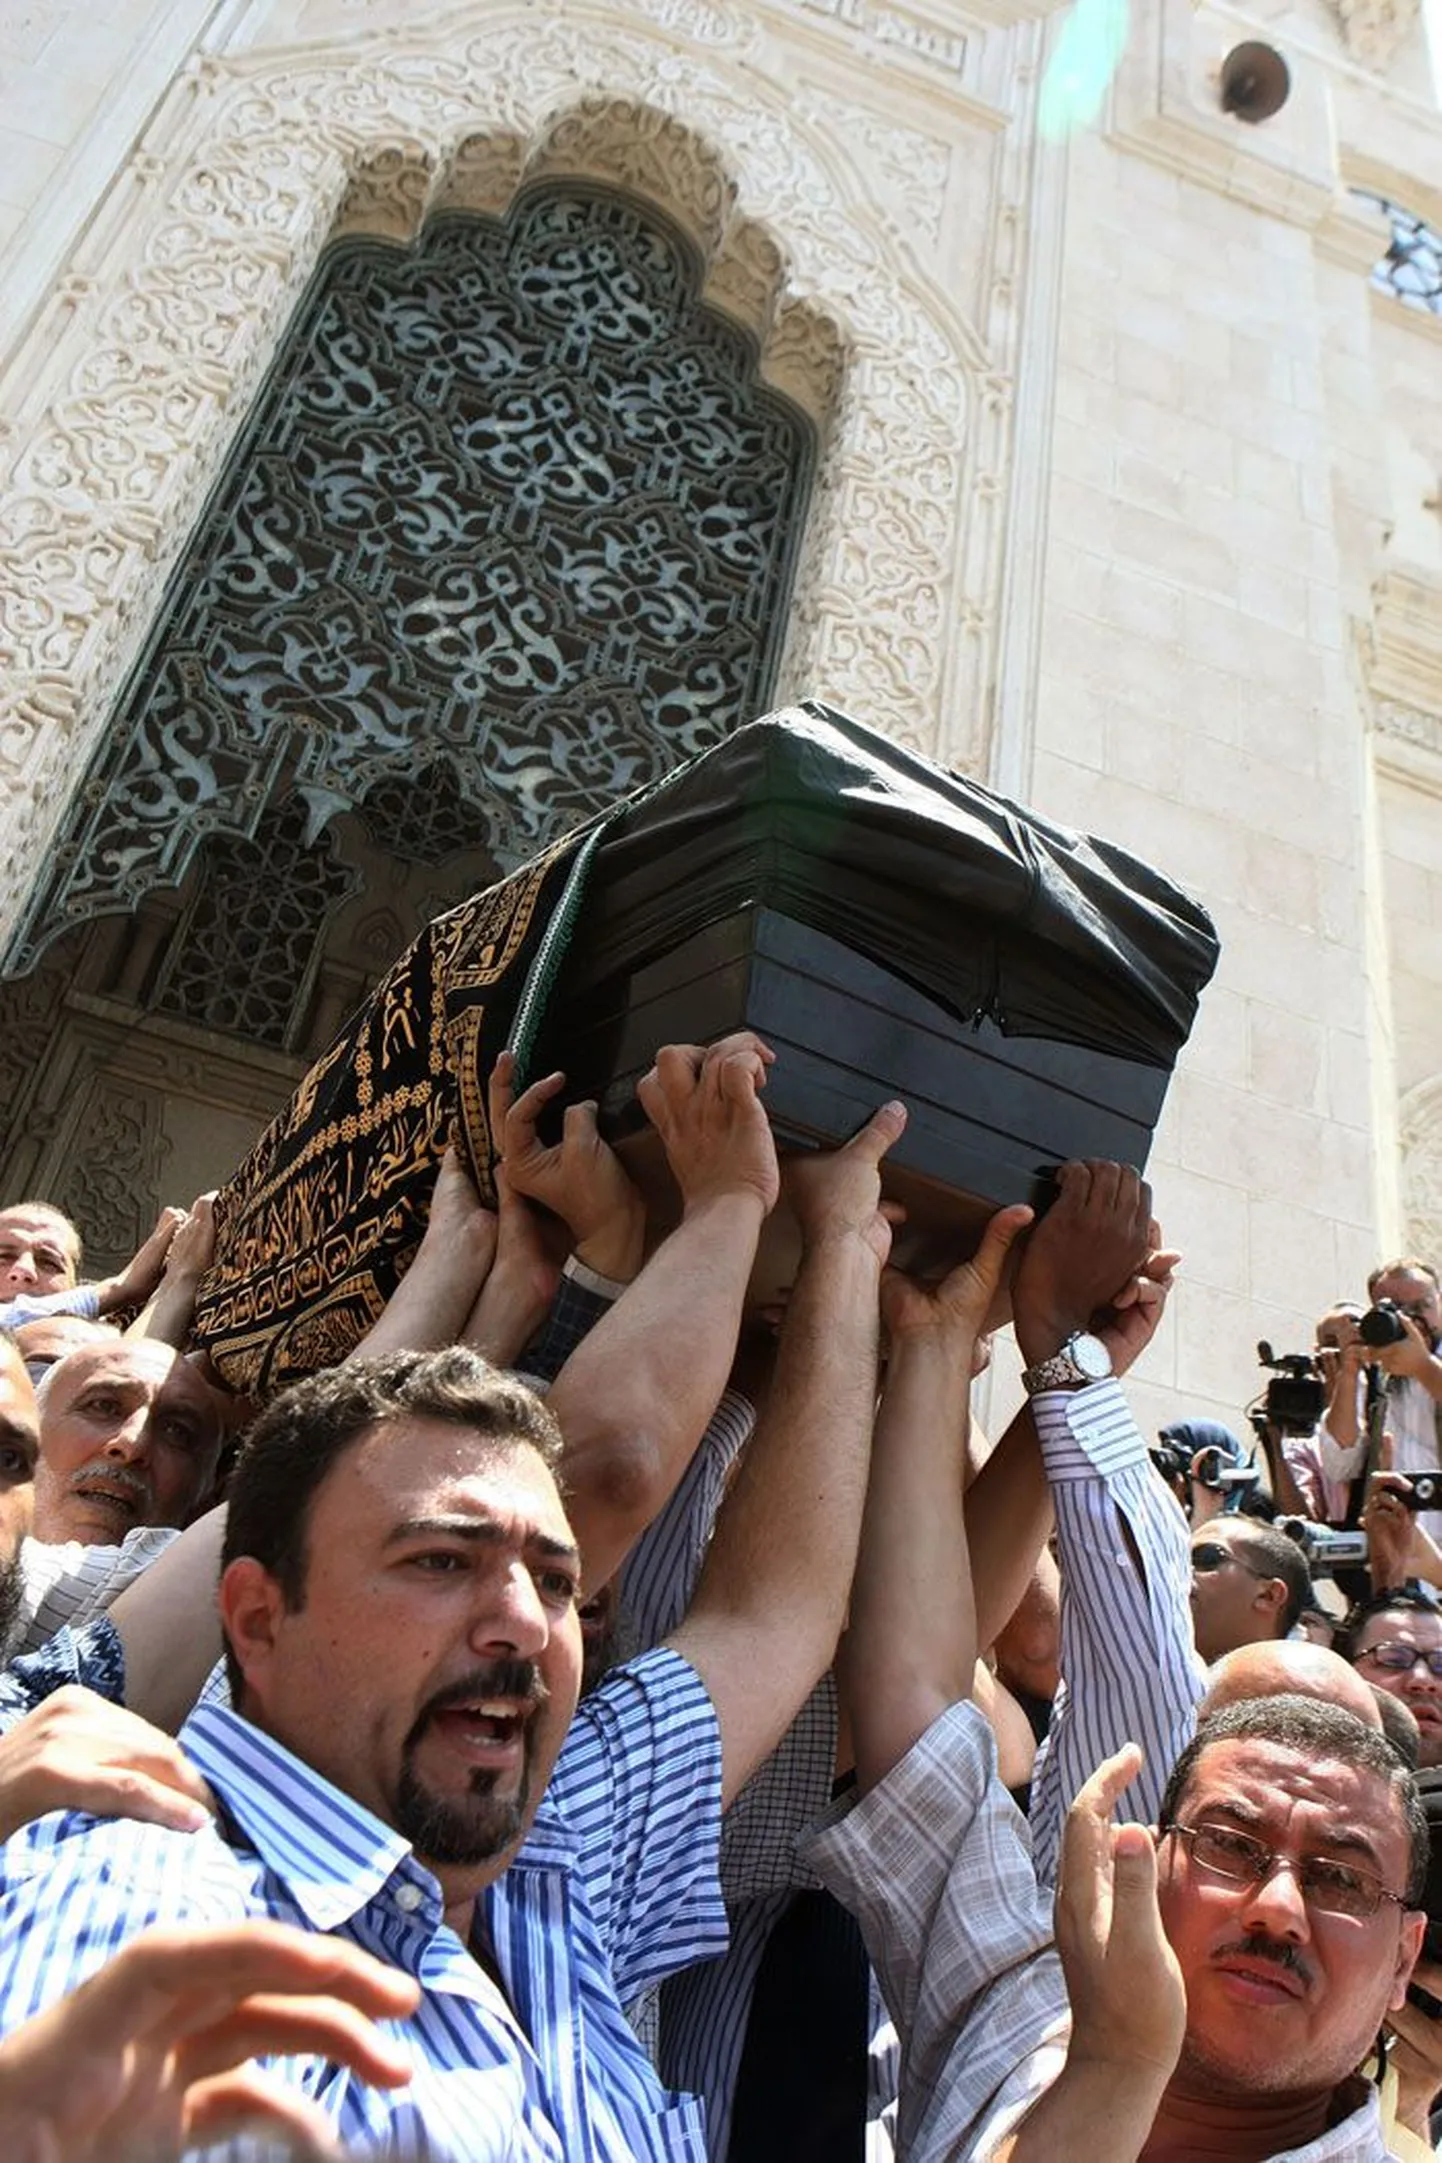 Друзья и родственники несут гроб с телом убитой египтянки по улицам Александрии.